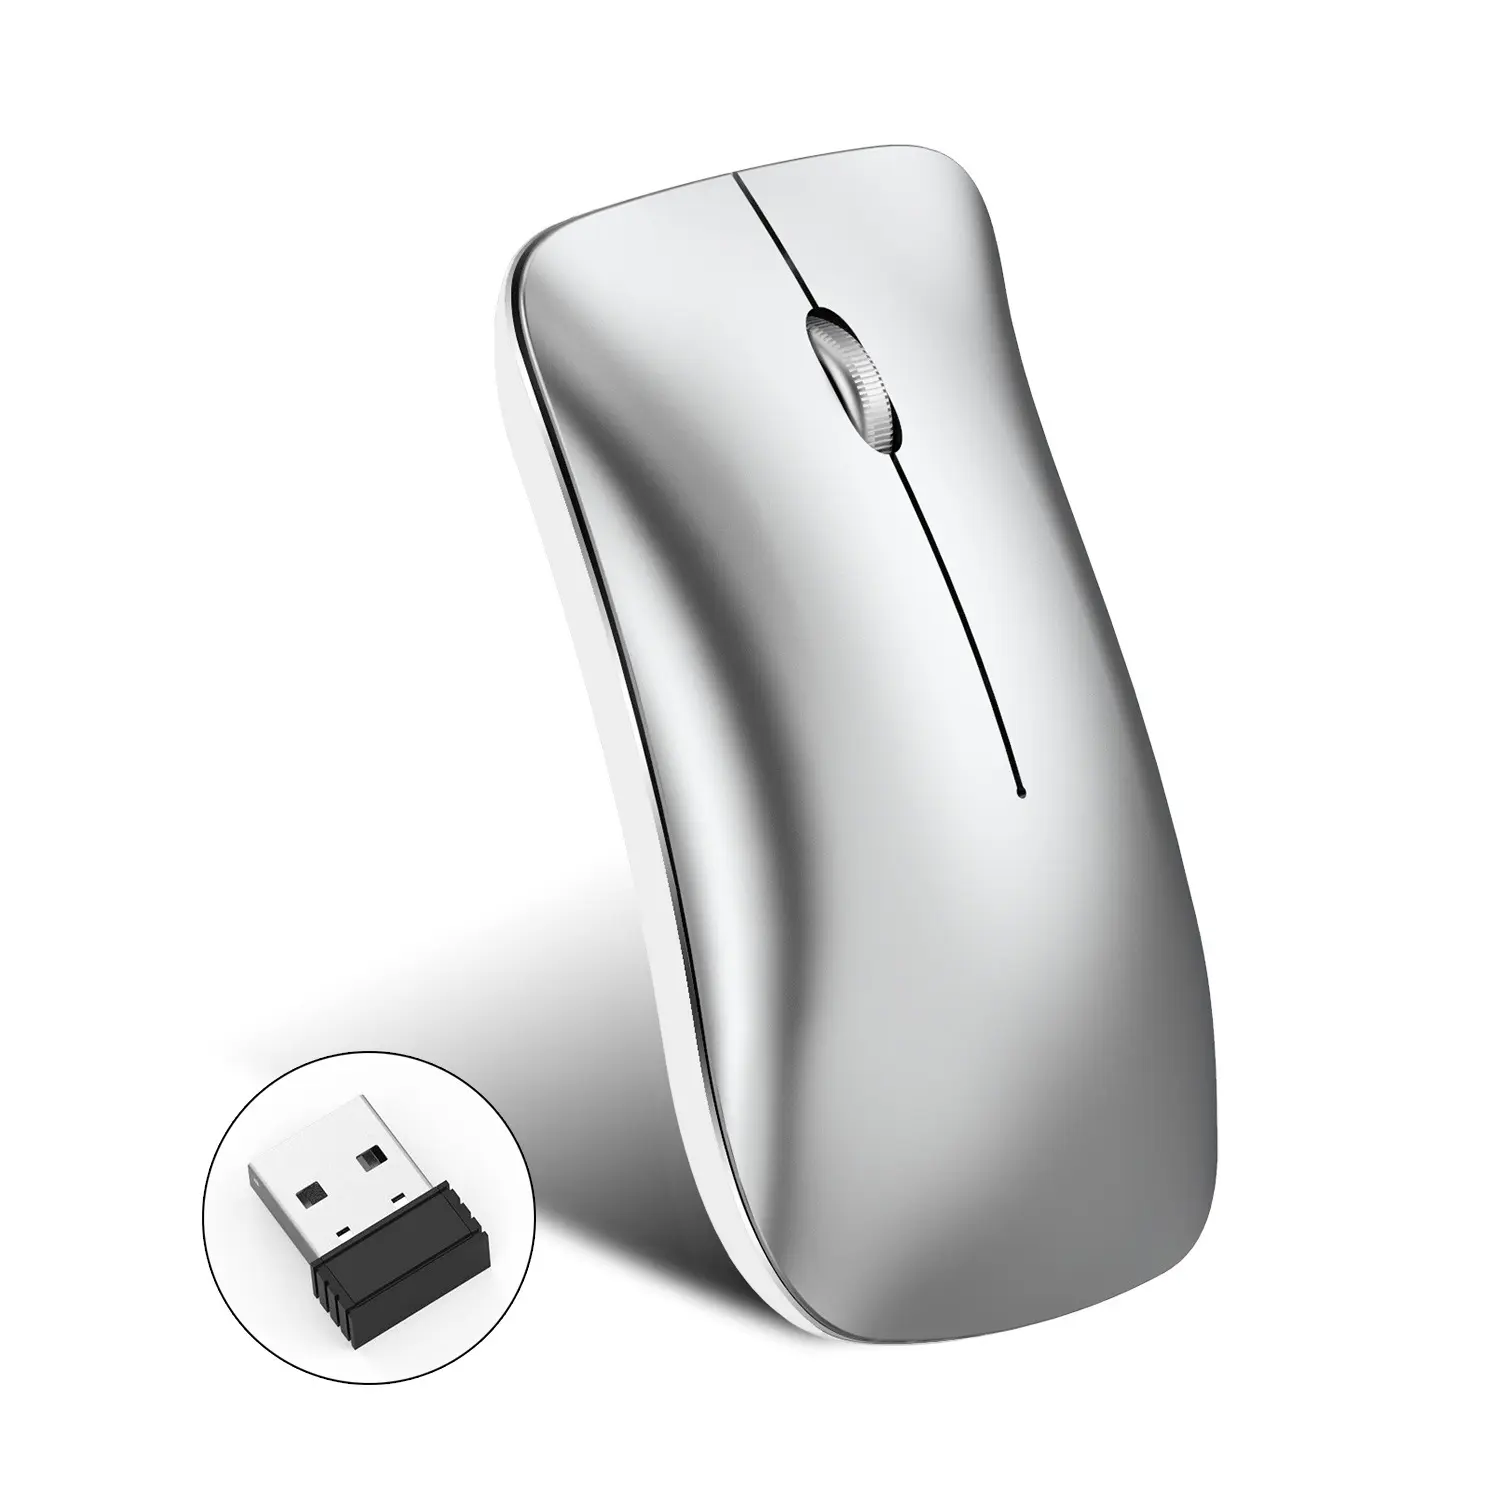 Sıcak satıcı BT 2.4G 3 modu kablosuz fare dilsiz ergonomik tasarım 1600DPI siyah gümüş kırmızı sessiz fare